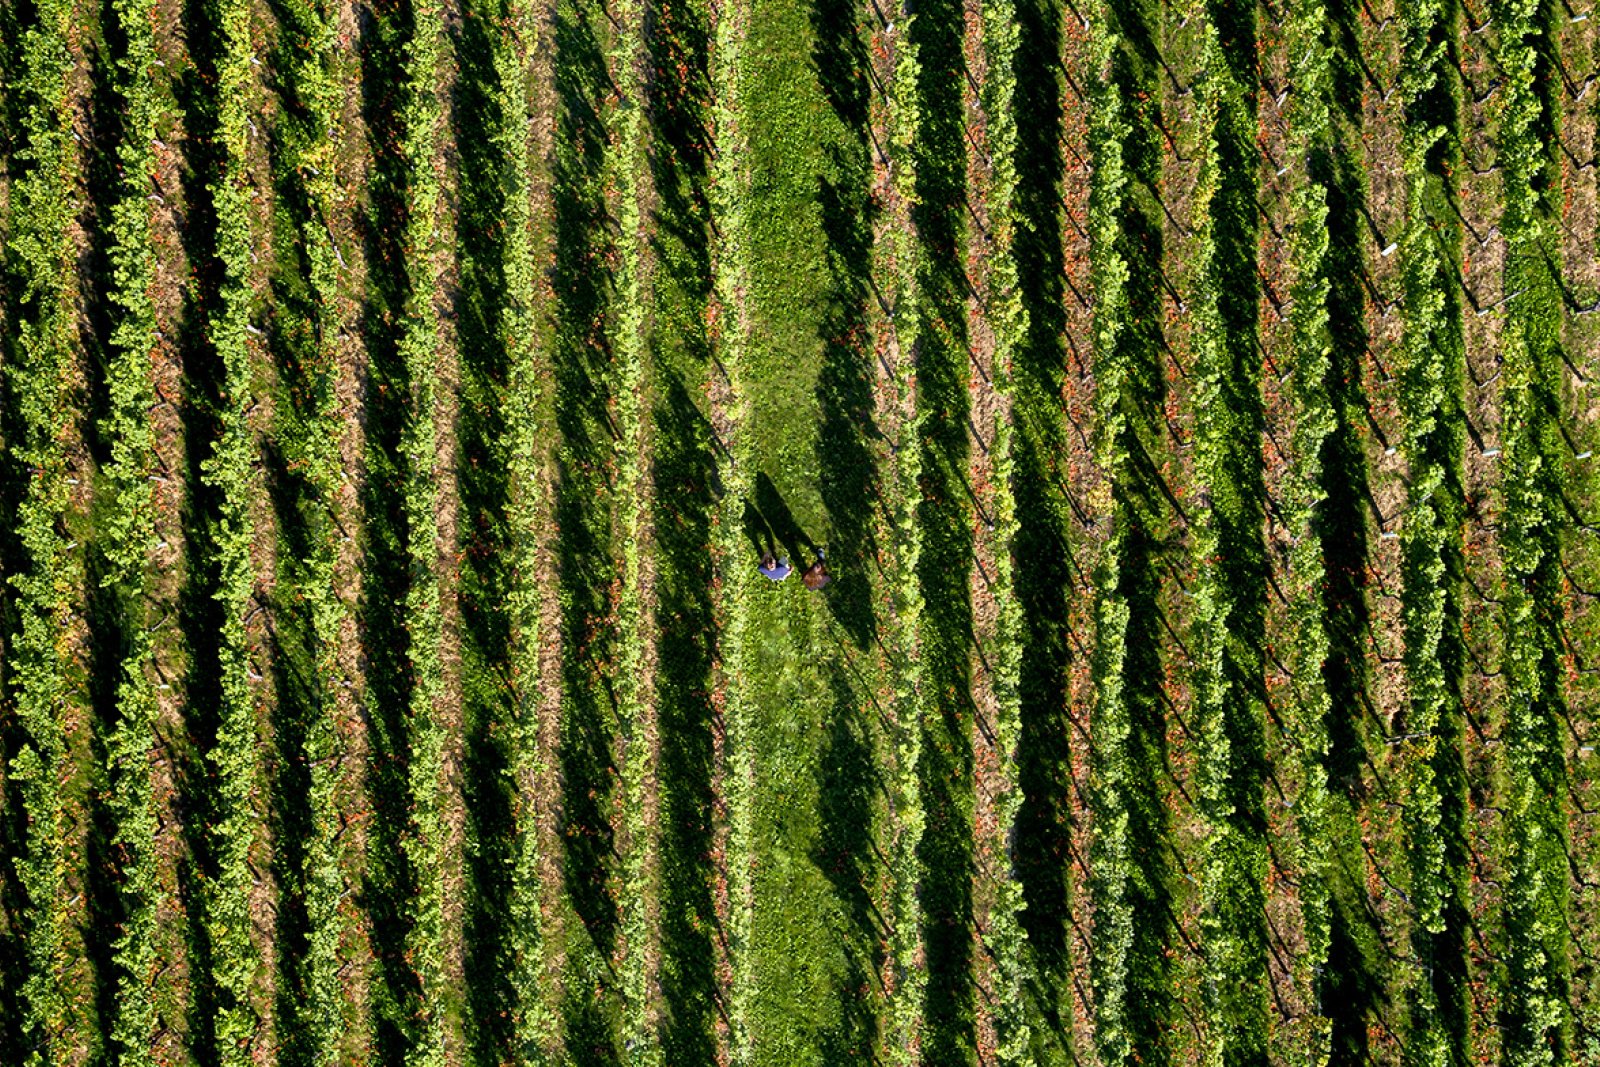 Aerial shot of 2 people walking through a vineyard in Limburg